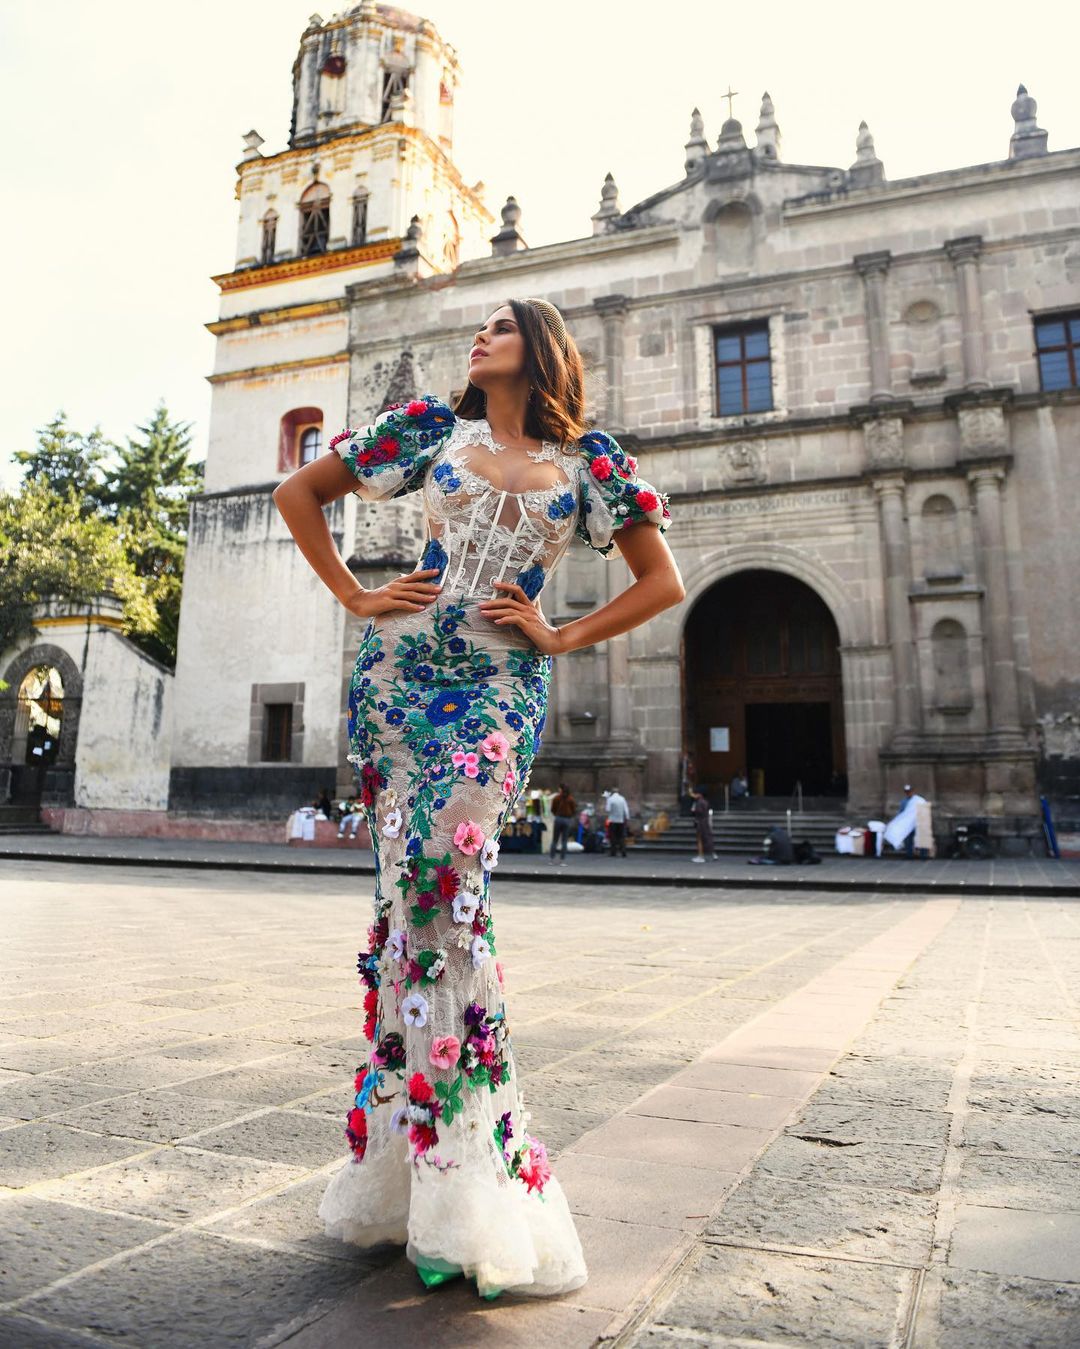 Настя Каменских вышла на улицу Мехико в платье из прозрачной ткани